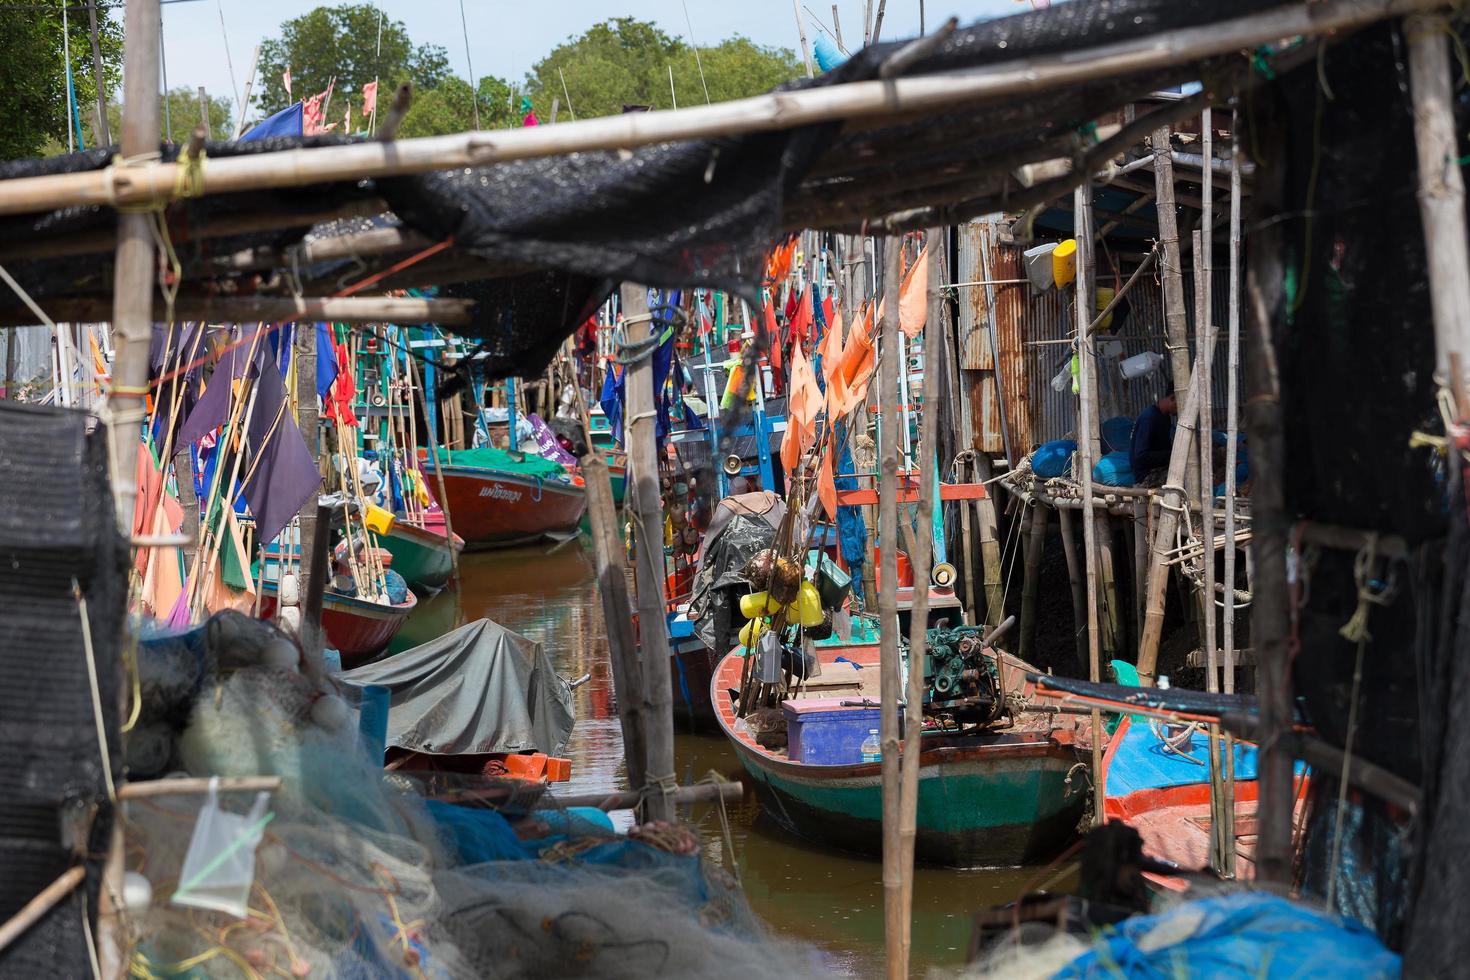 Pequenos barcos de pesca tailandeses atracaram na vila de pescadores durante o dia foto